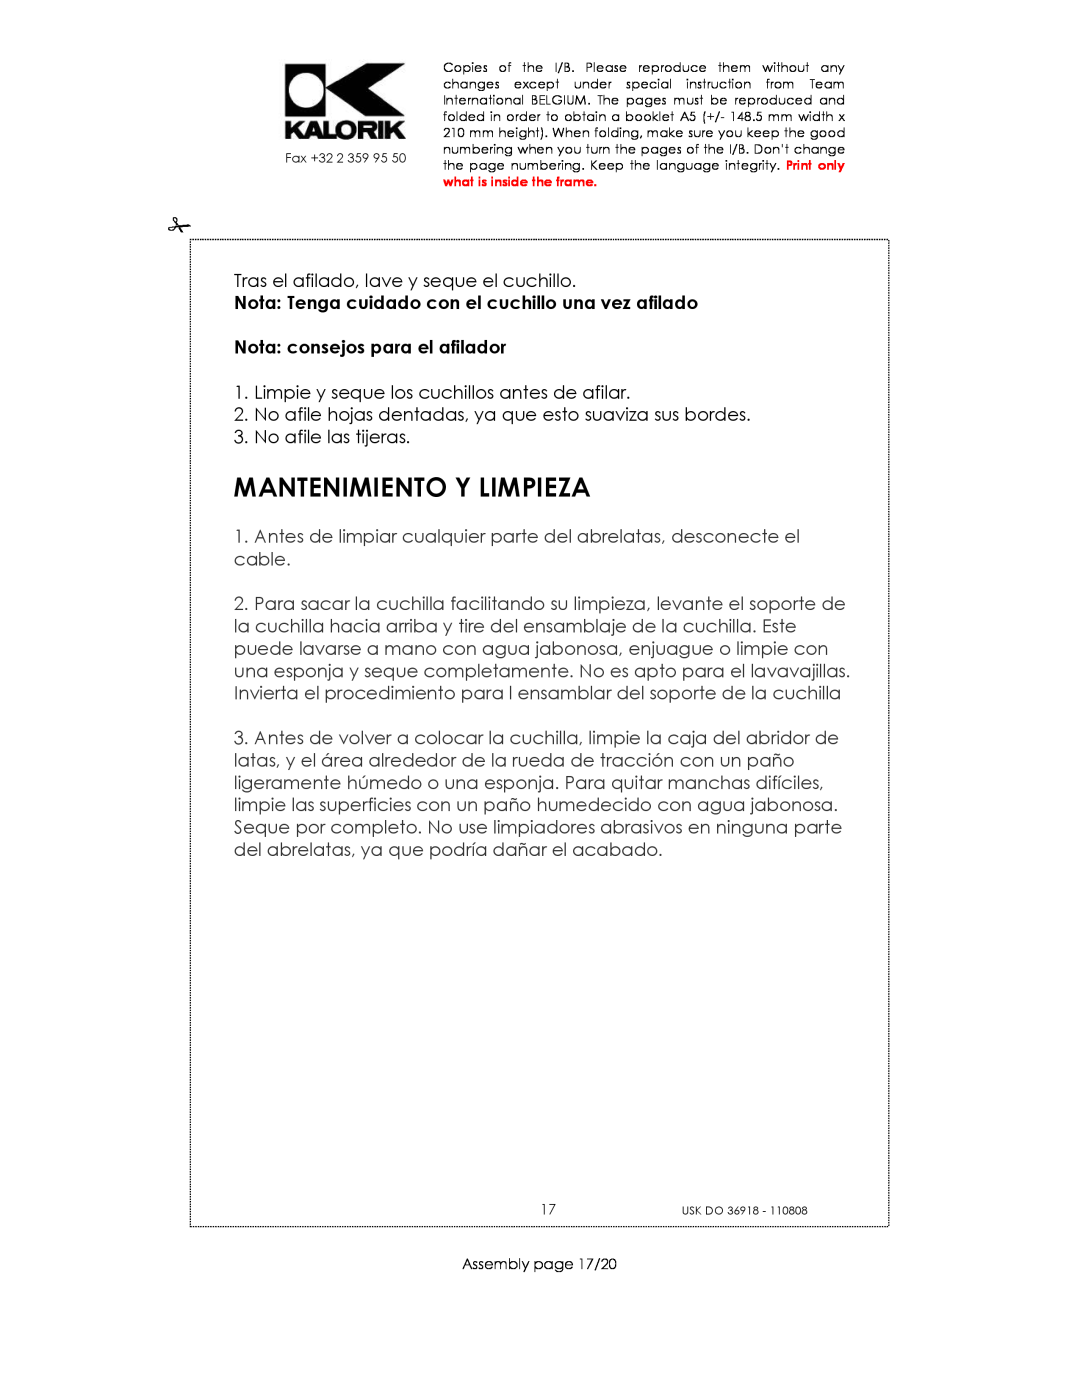 Kalorik USK DO 36918 manual Mantenimiento Y Limpieza, Nota consejos para el afilador 